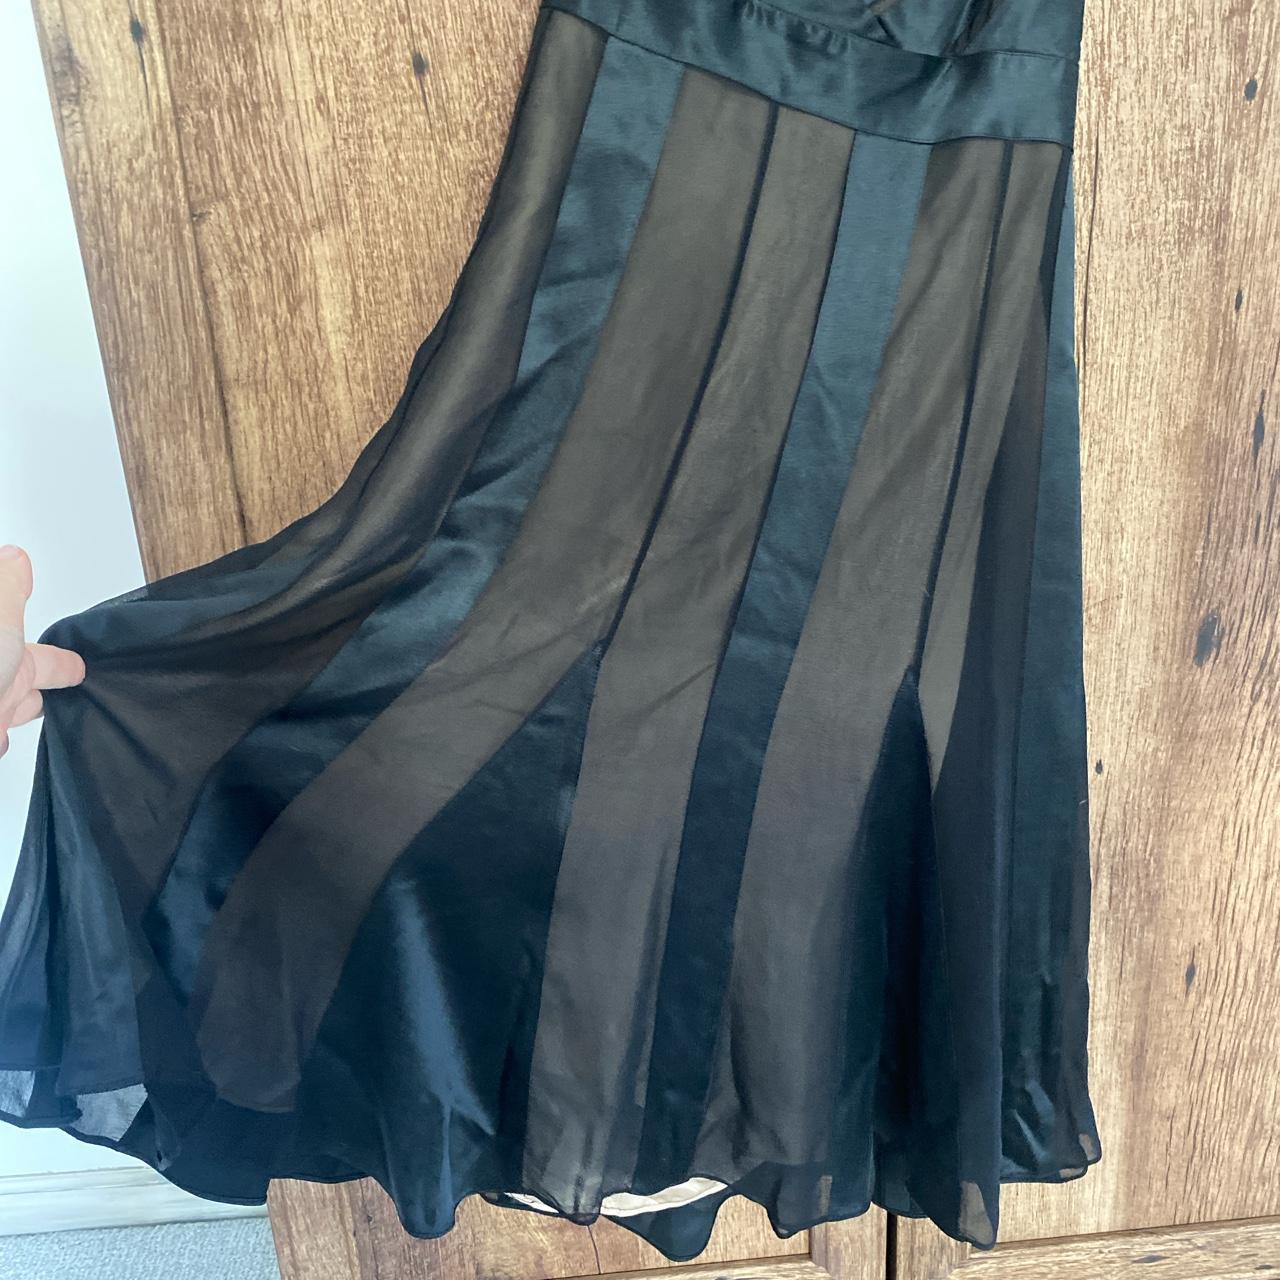 BCBG little black dress size 2, excellent condition - Depop